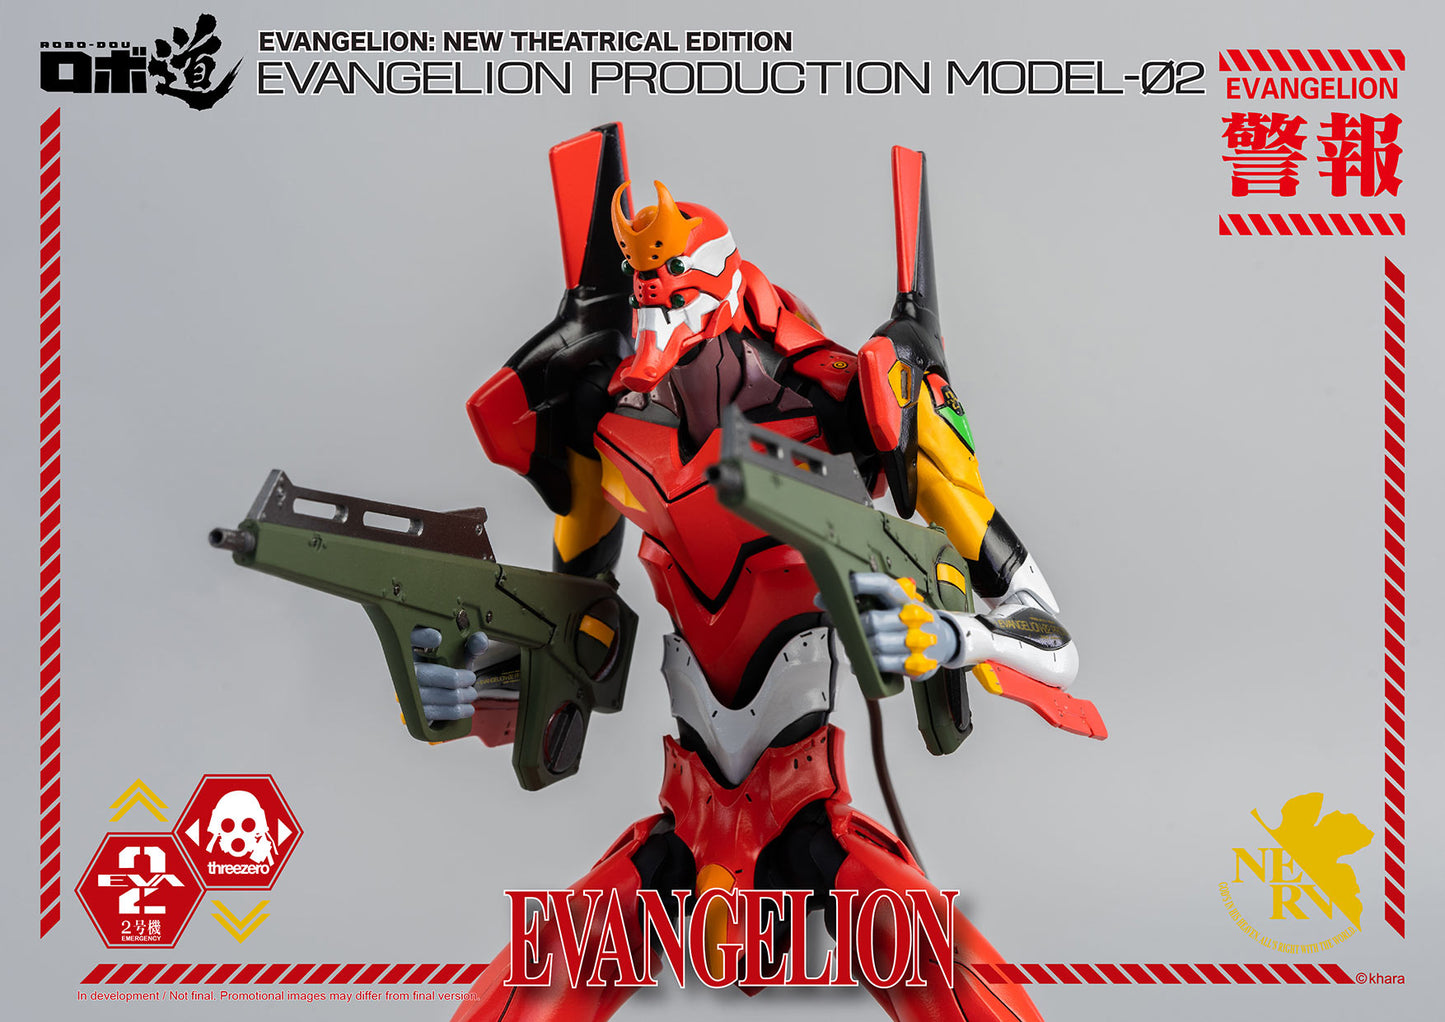 ROBO-DOU Evangelion Production Model-02 - Evangelion: New Theatrical Edition Threezero